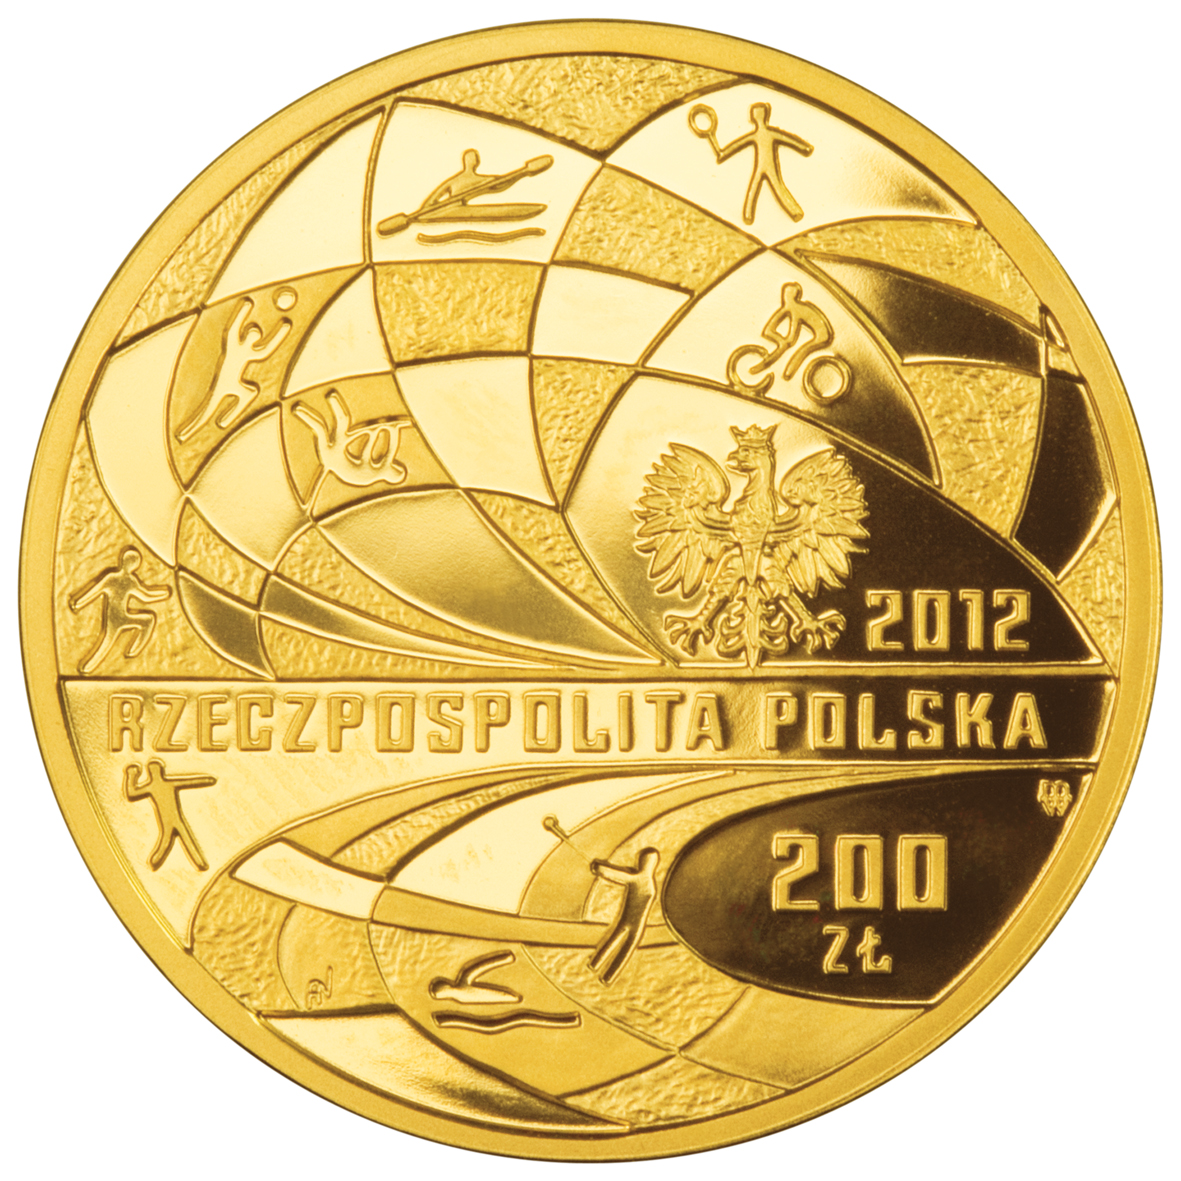 PL 200 Zloty 2012 monogram MW